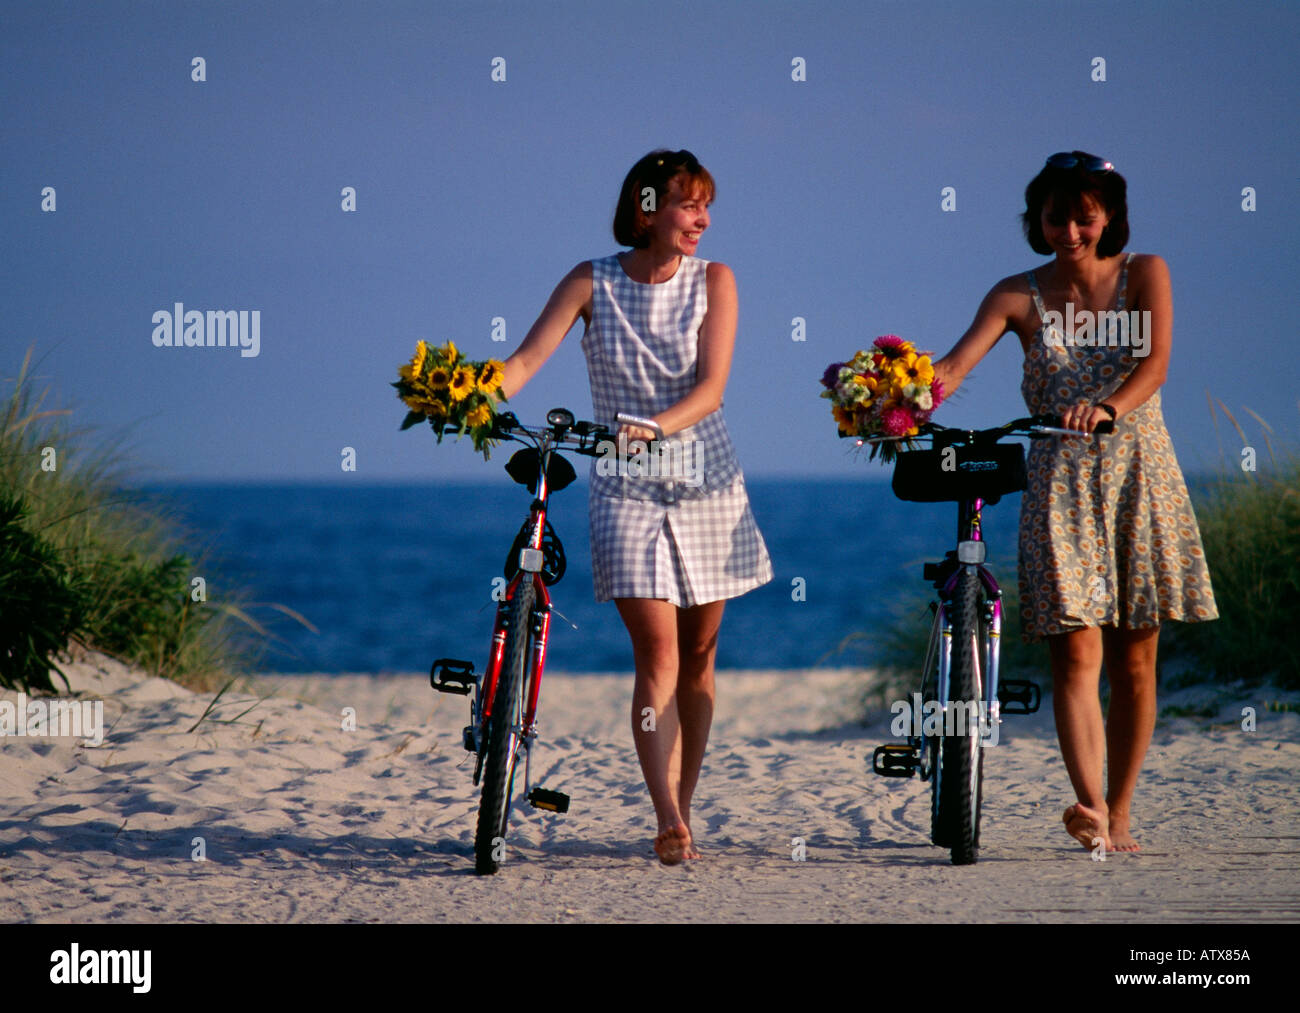 Zwei junge Frauen sitzen auf dem Fahrrad mit Korb mit Blumen Stockfoto